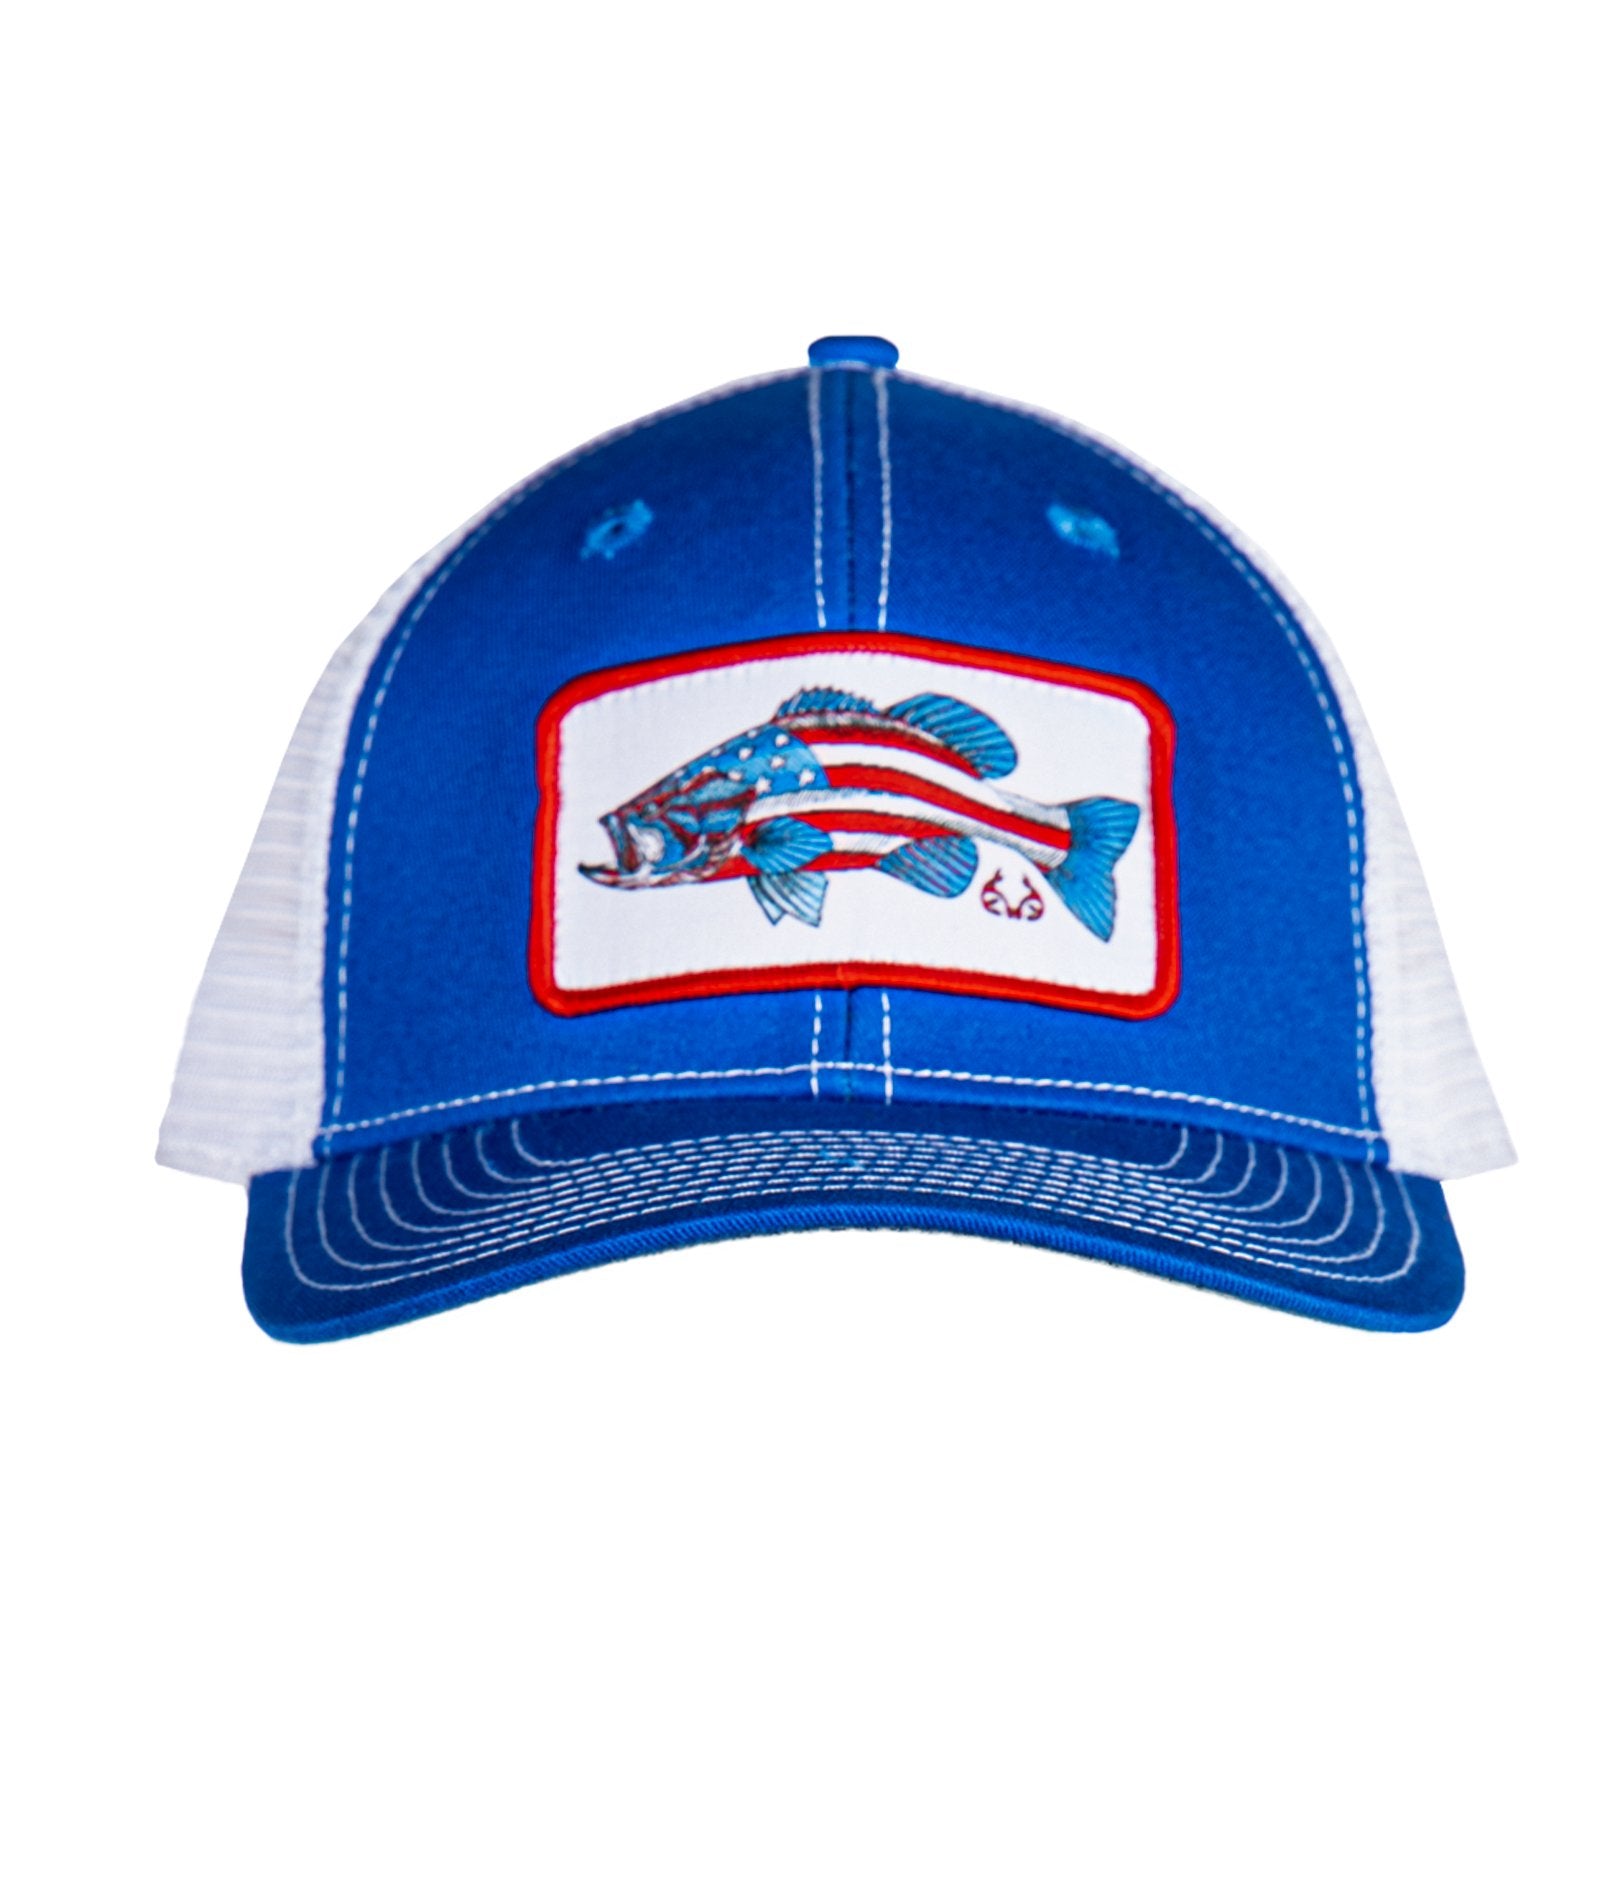 http://colosseumathletics.com/cdn/shop/files/realtree-americana-ameribass-trucker-adjustable-hat-front.jpg?v=1701975049